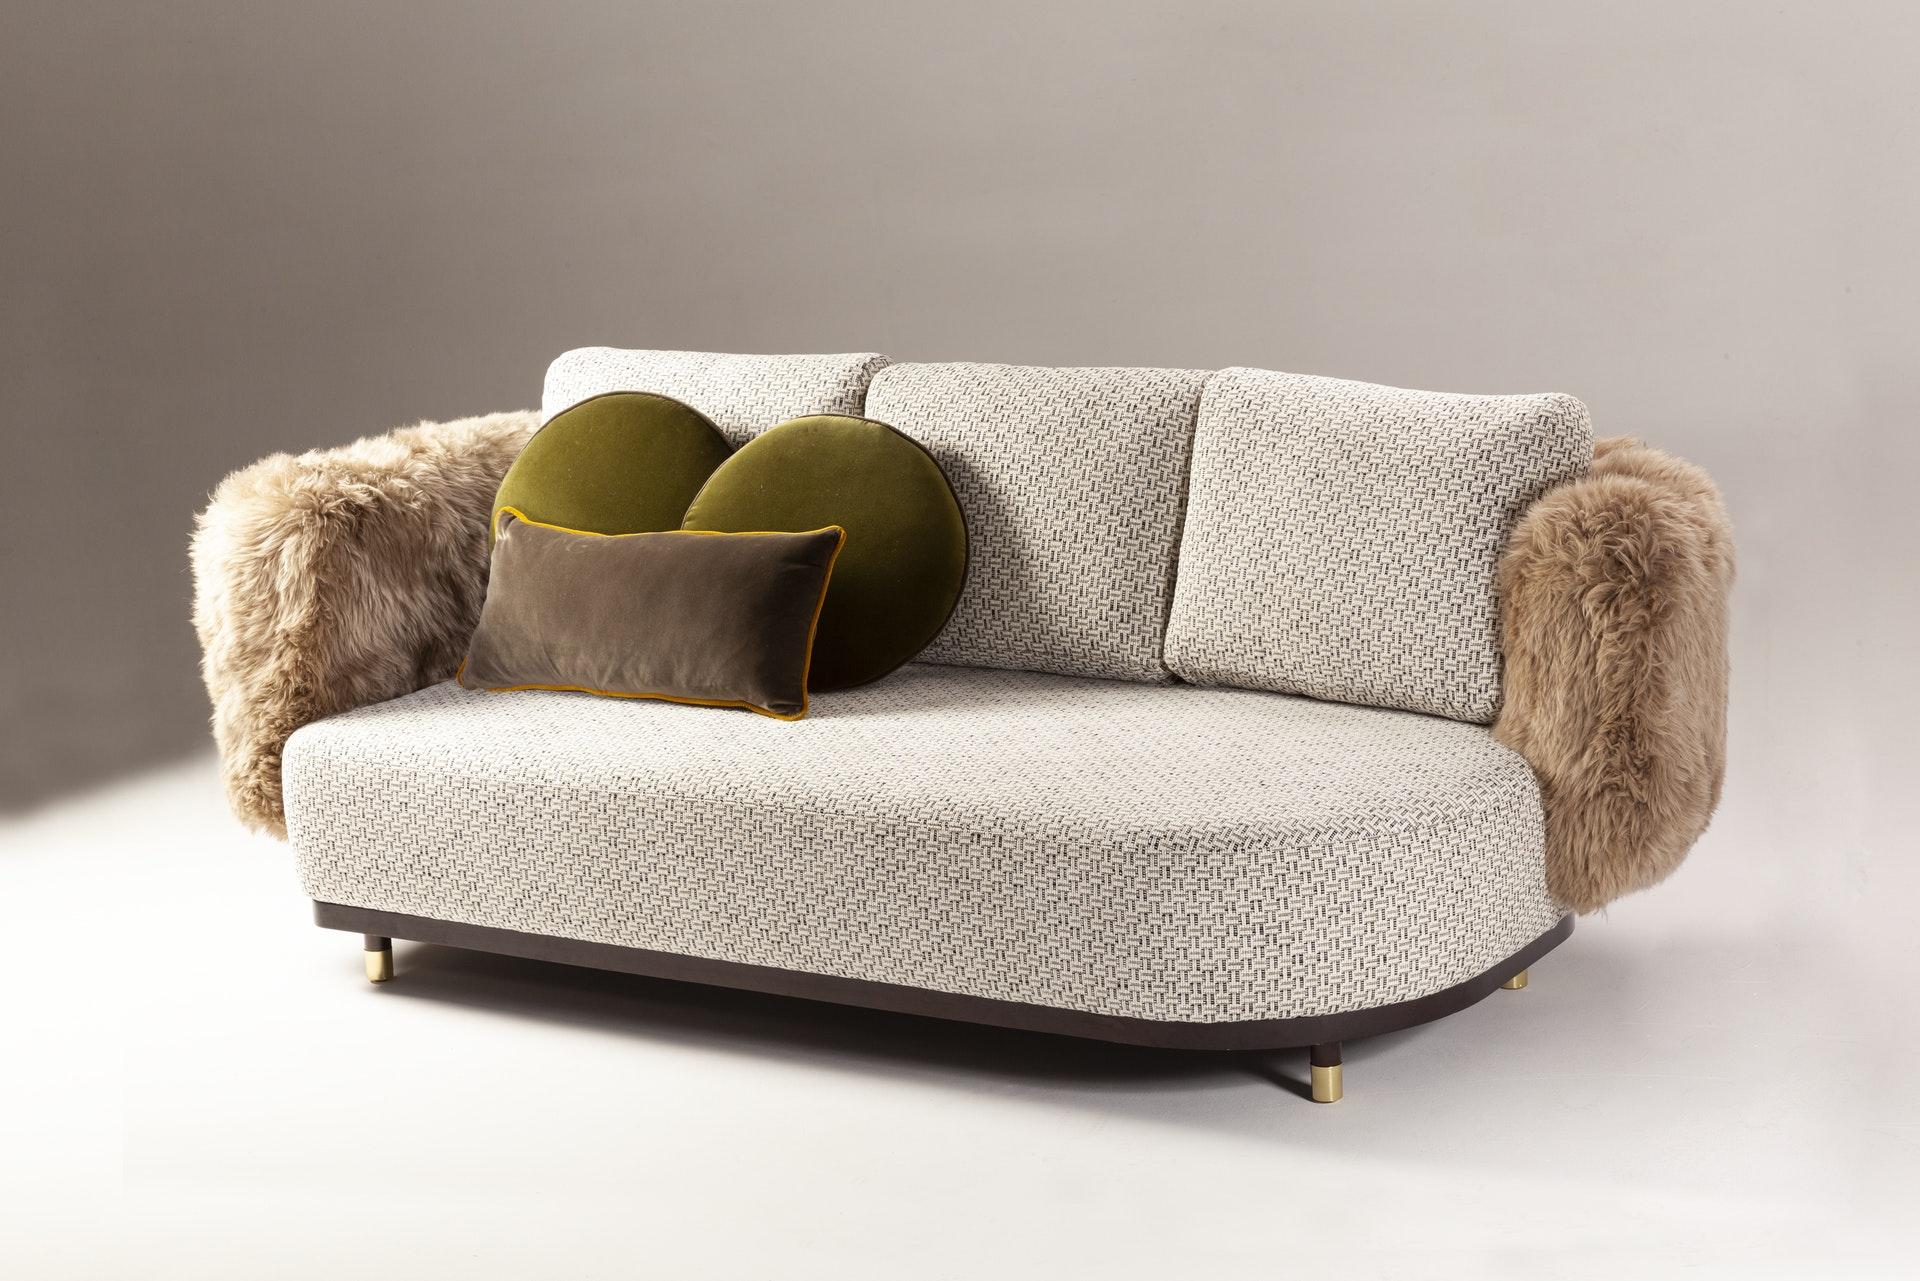 Single Man Couch 280 par Dooq
Mesures : L 280 x P 105 x H 83 cm
Matériaux : tissu d'ameublement et passepoil ou cuir, franges.

Dooq est une société de design qui a pour vocation de célébrer le luxe de la vie. Créer des designs qui stimulent les